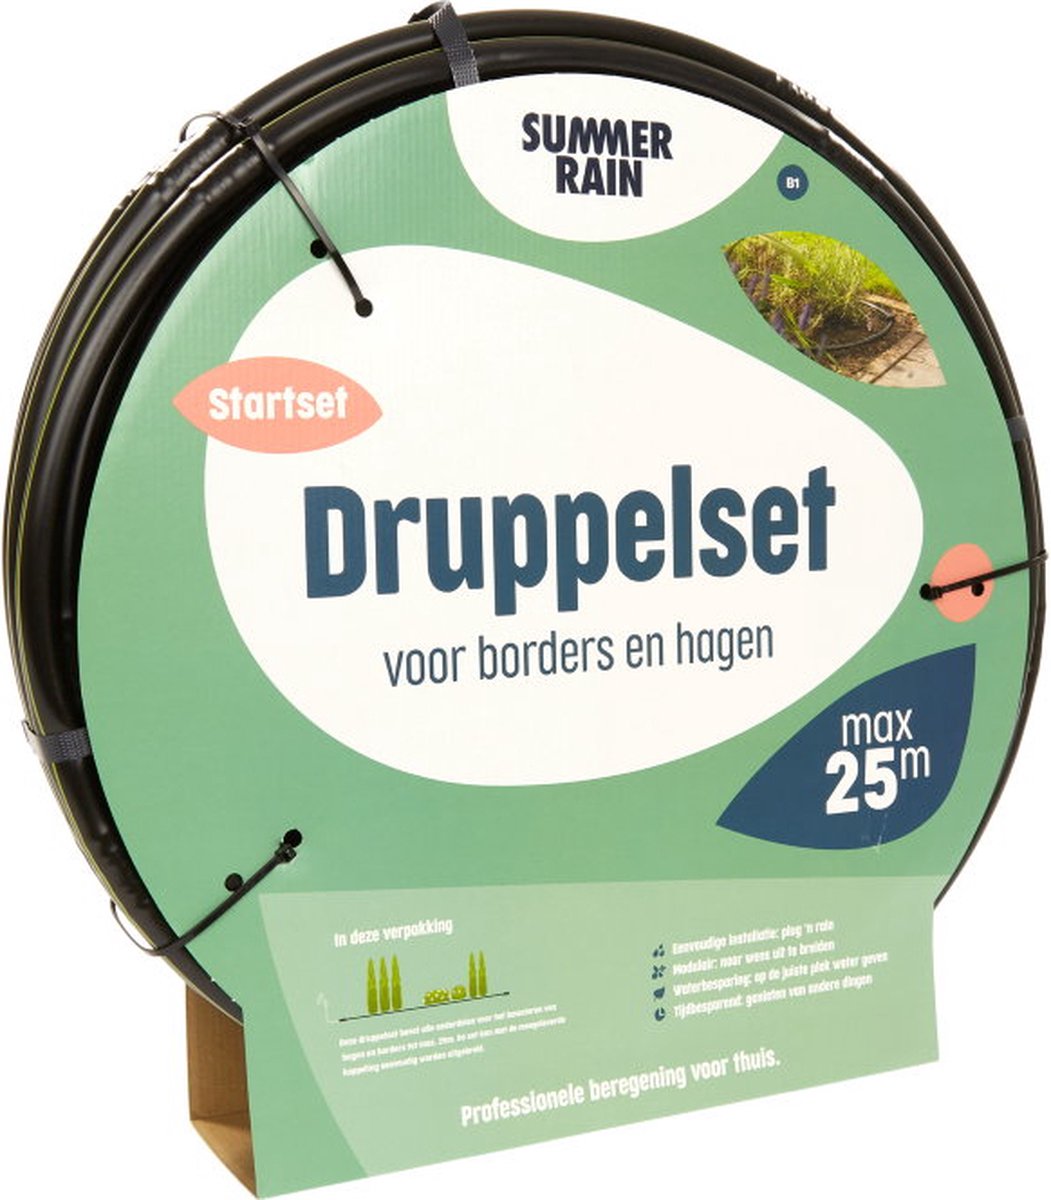 SummerRain druppelsysteem - druppelset voor borders en hagen - druppelslang 25 m1 - professionele beregening voor thuis